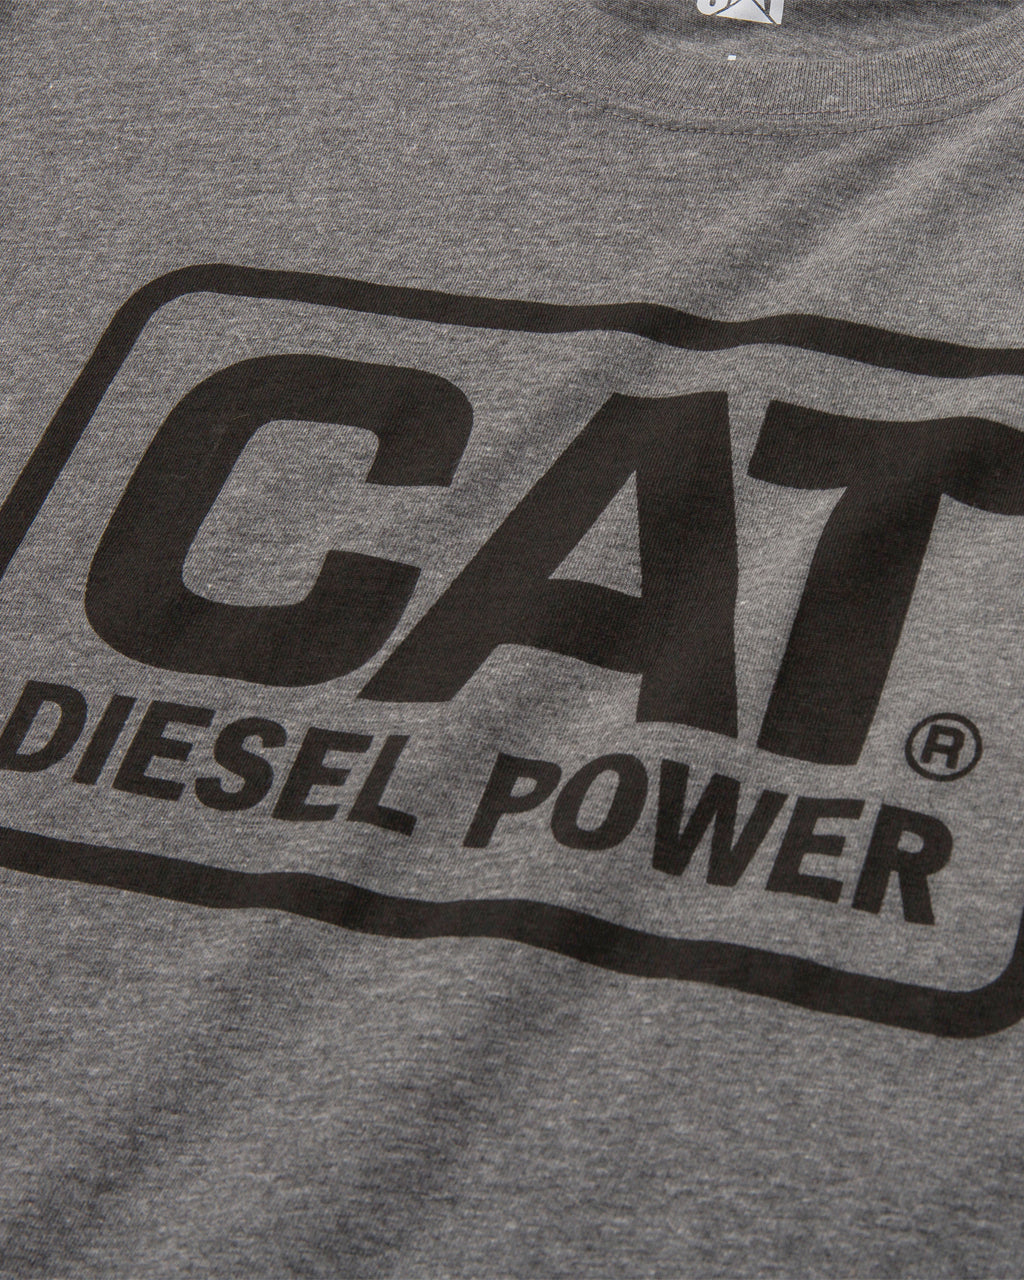 CAT Men&#39;s Diesel Power T-Shirt - Work World - Workwear, Work Boots, Safety Gear